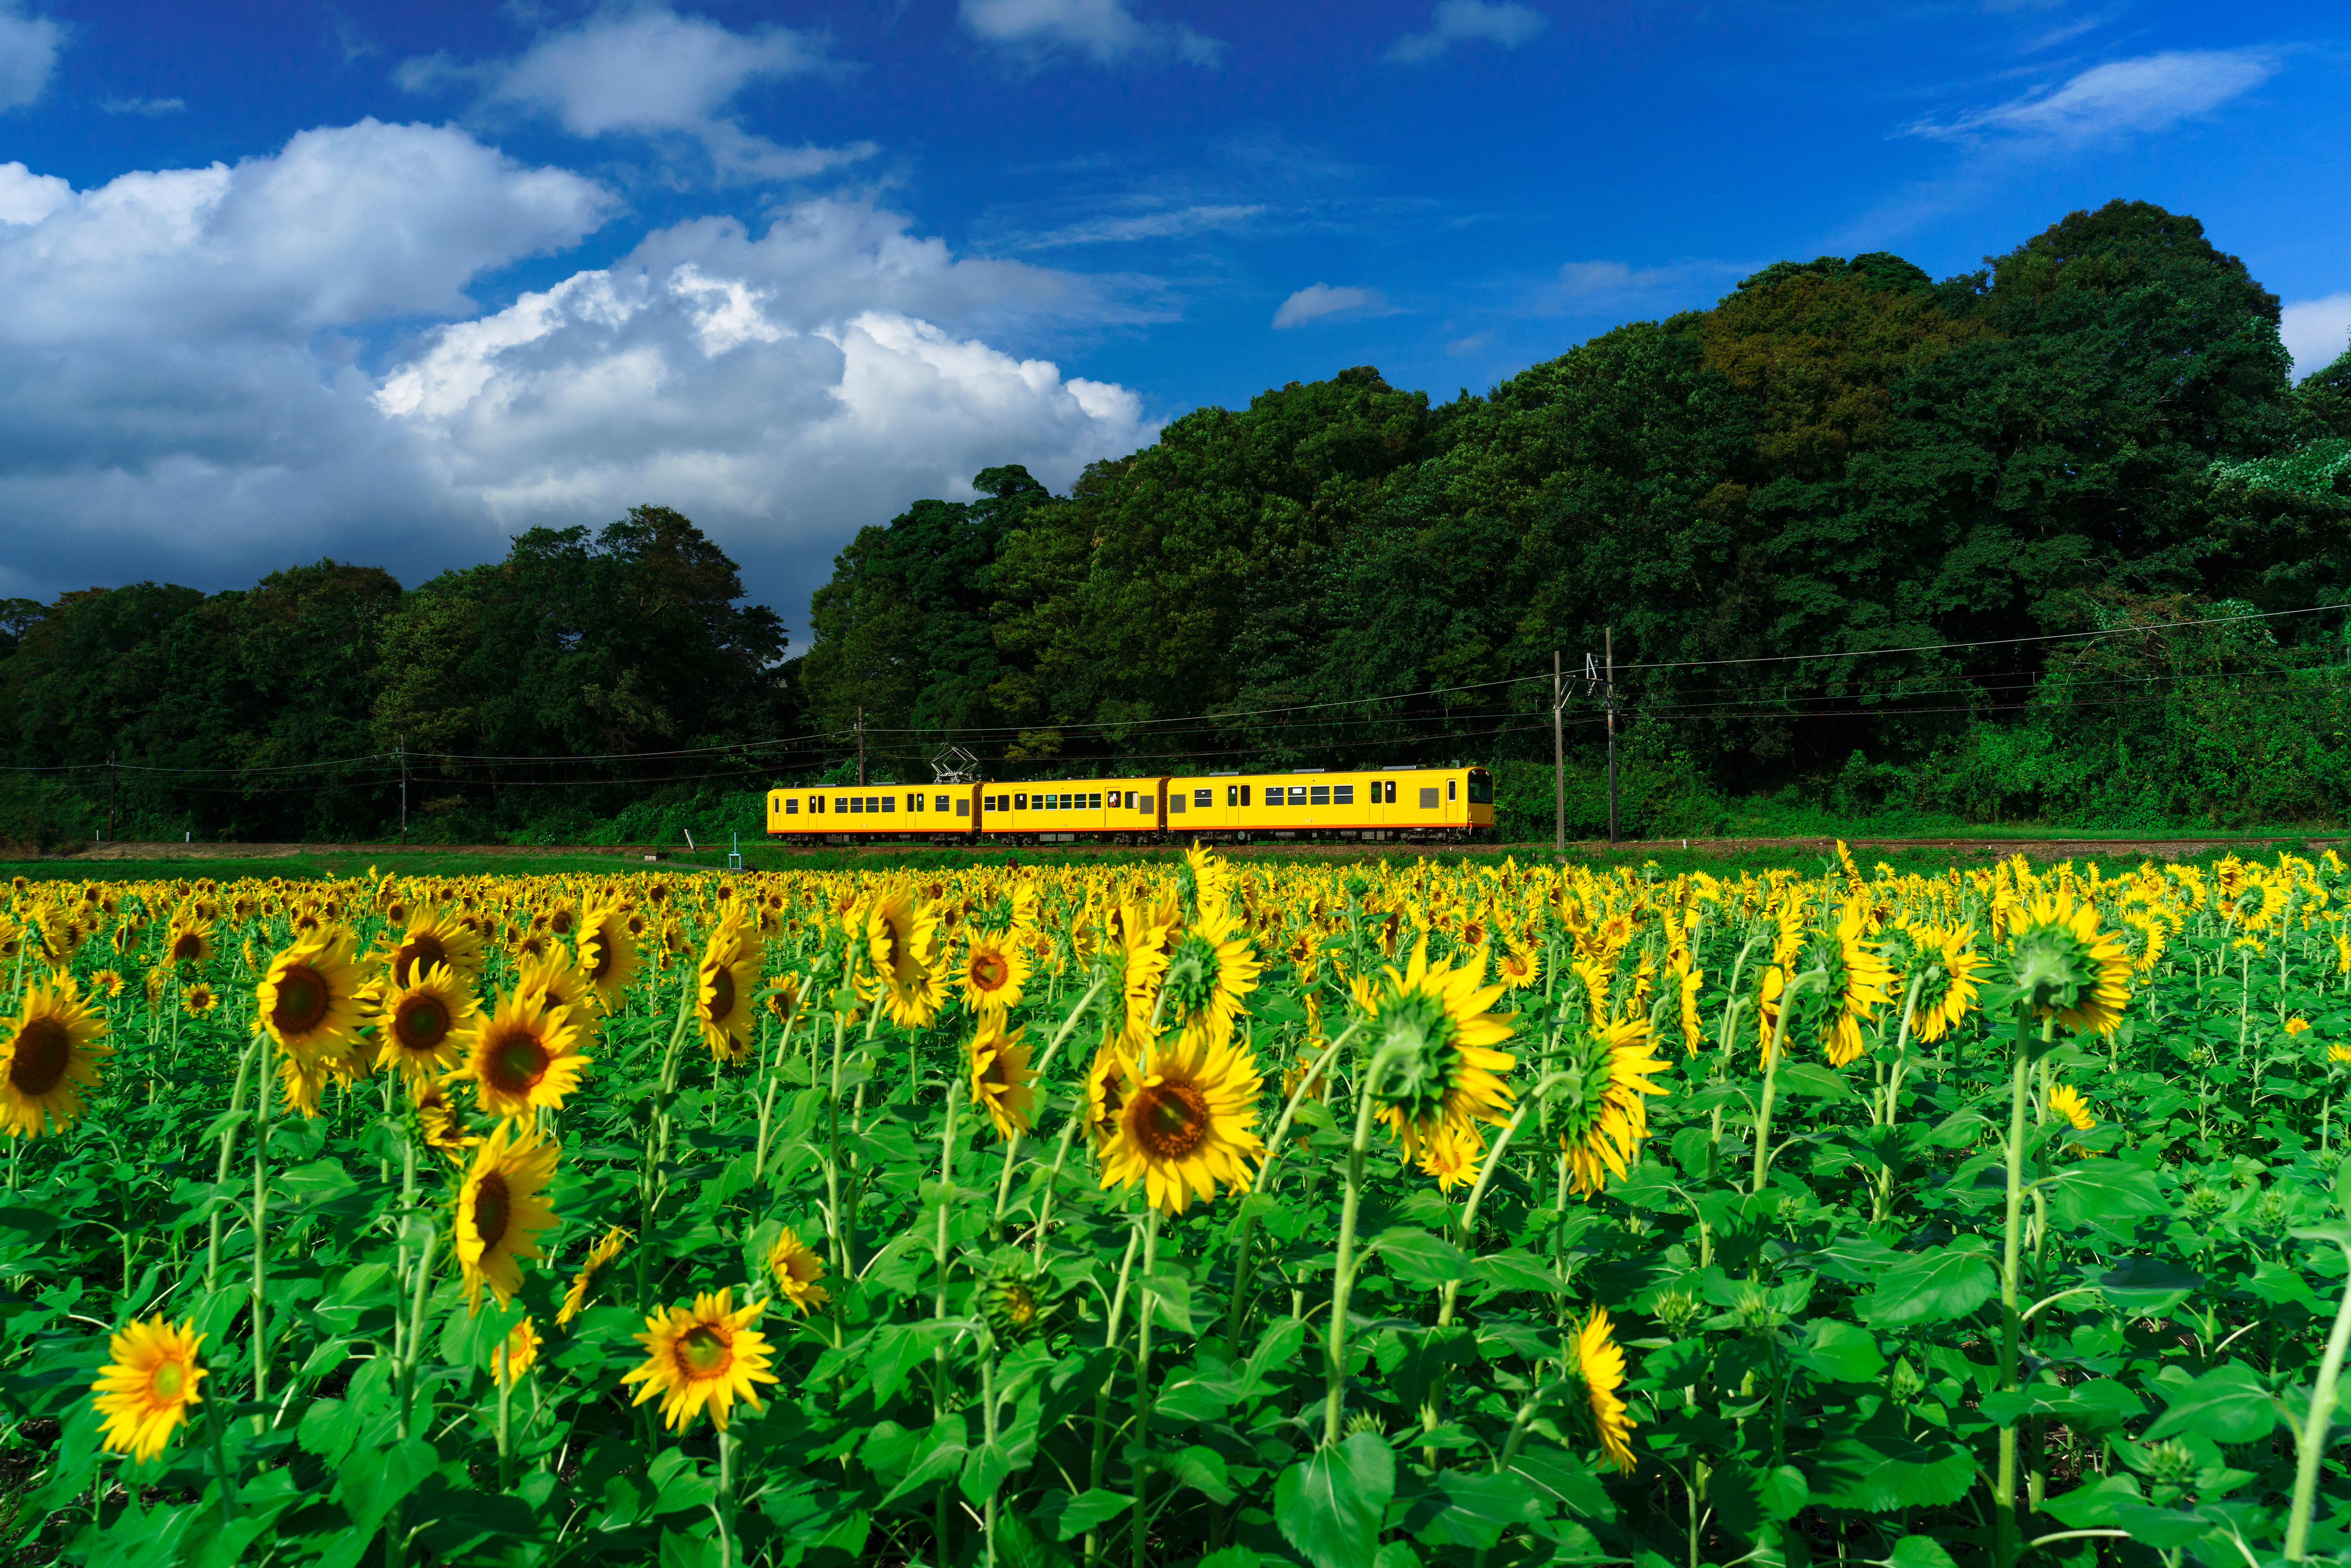 上笠田のひまわり畑の写真 青空とひまわりと三岐鉄道 三重県の無料写真は三重フォトギャラリー